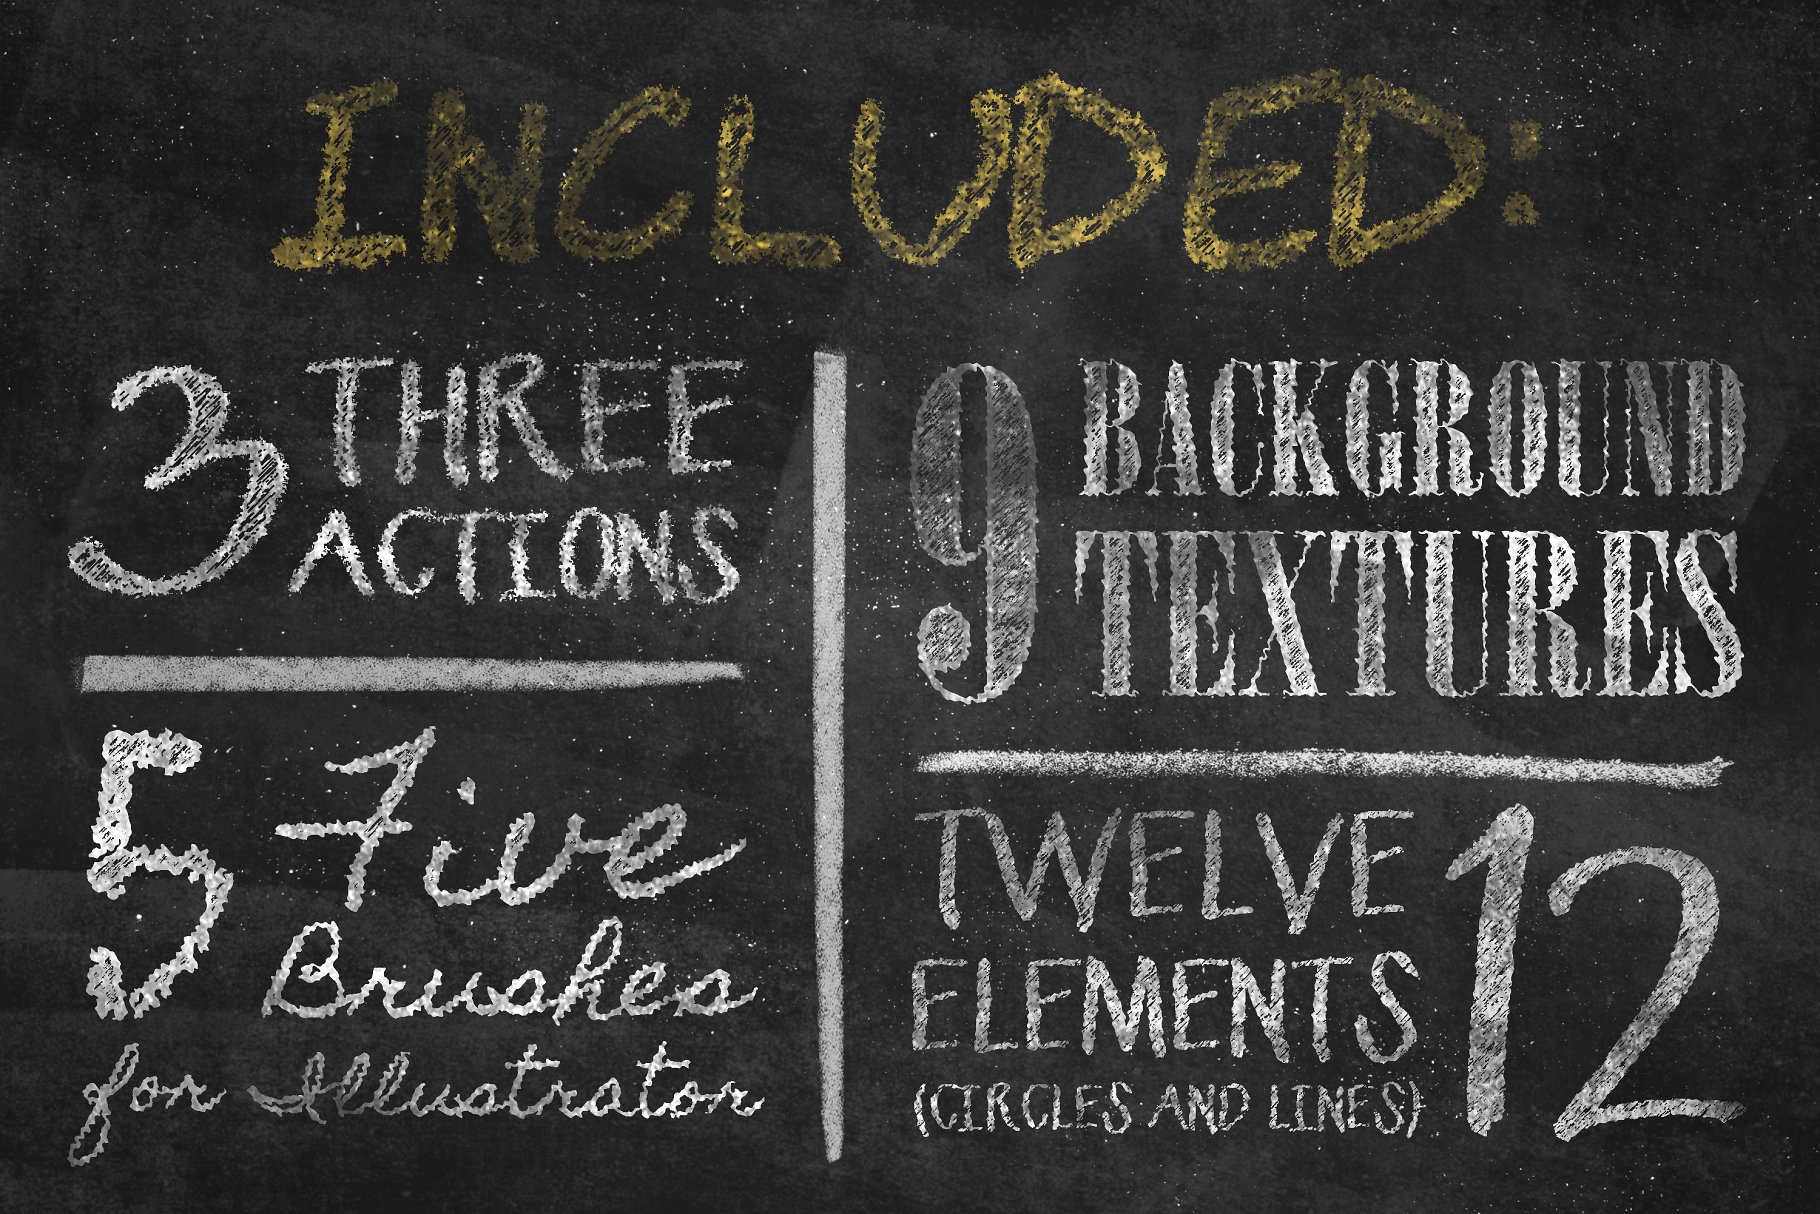 粉笔画粉笔字体样式&PS笔刷 Chalkboard Generator插图(2)